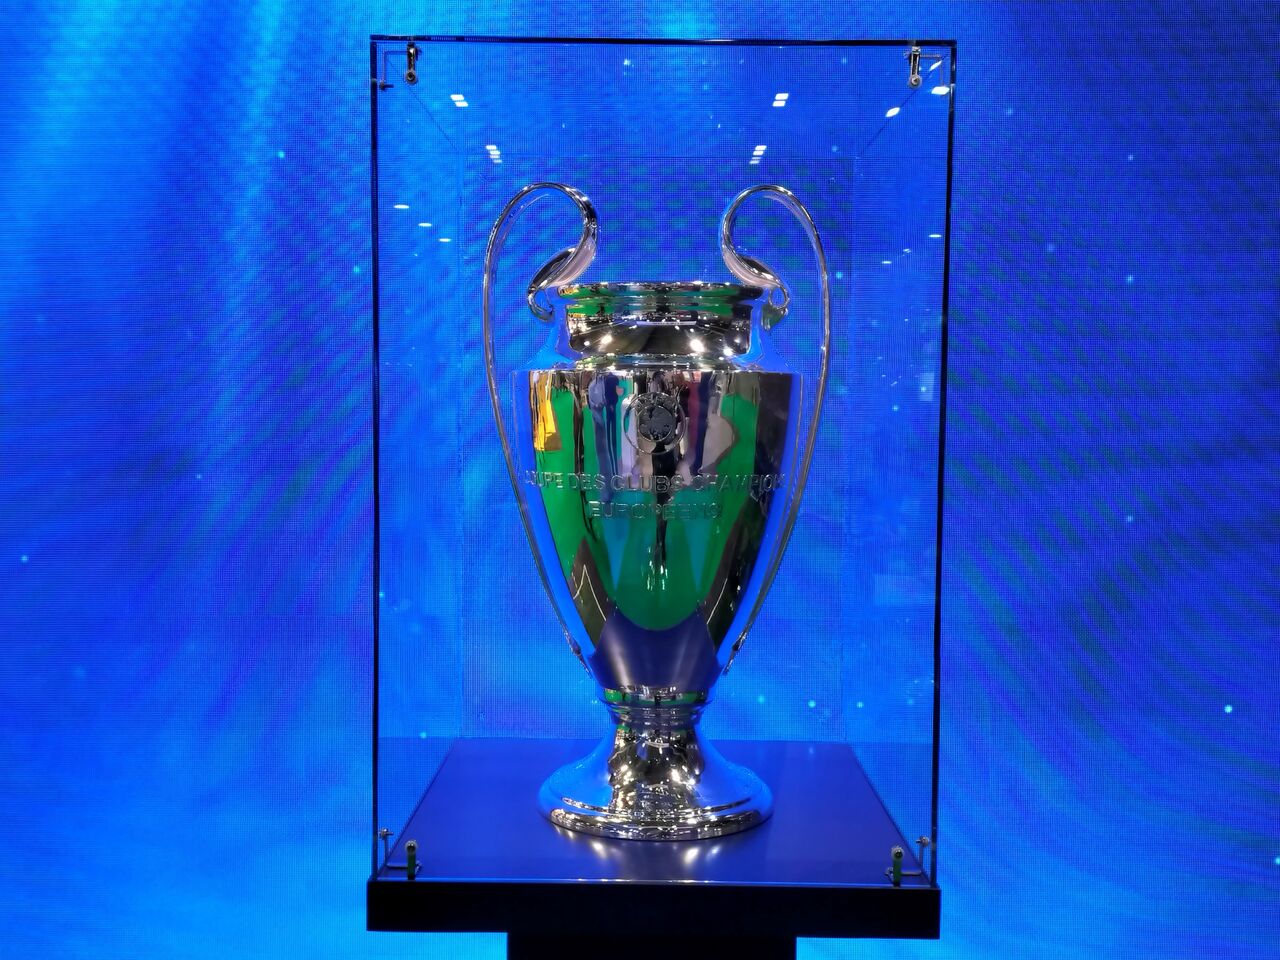 Por conflicto Rusia Ucrania, UEFA cambiaría de sede final de Champions League